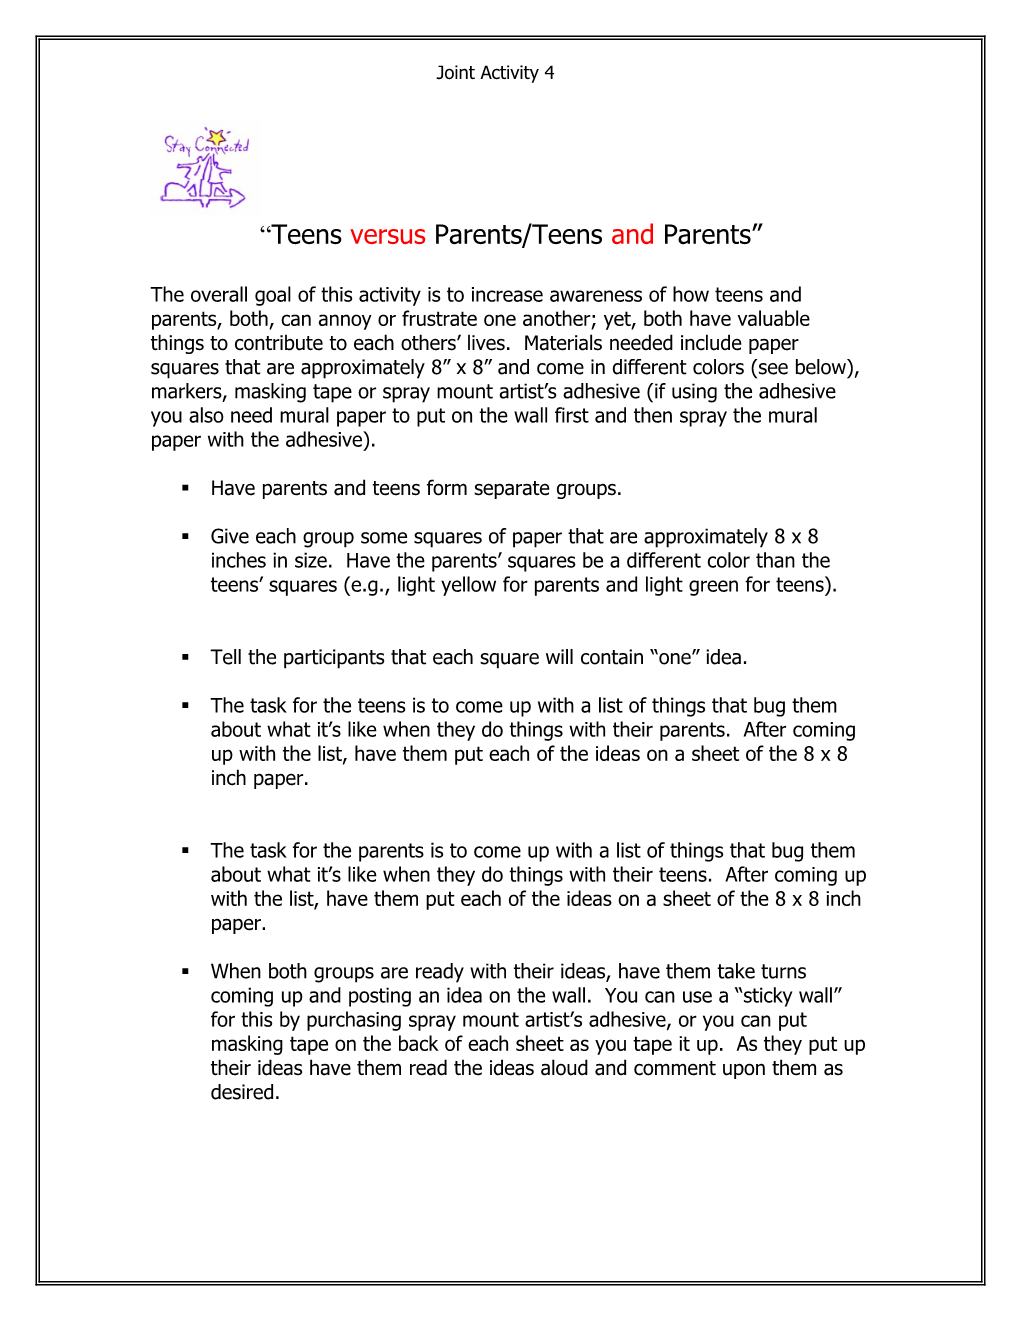 Teens Versus Parents/Teens and Parents